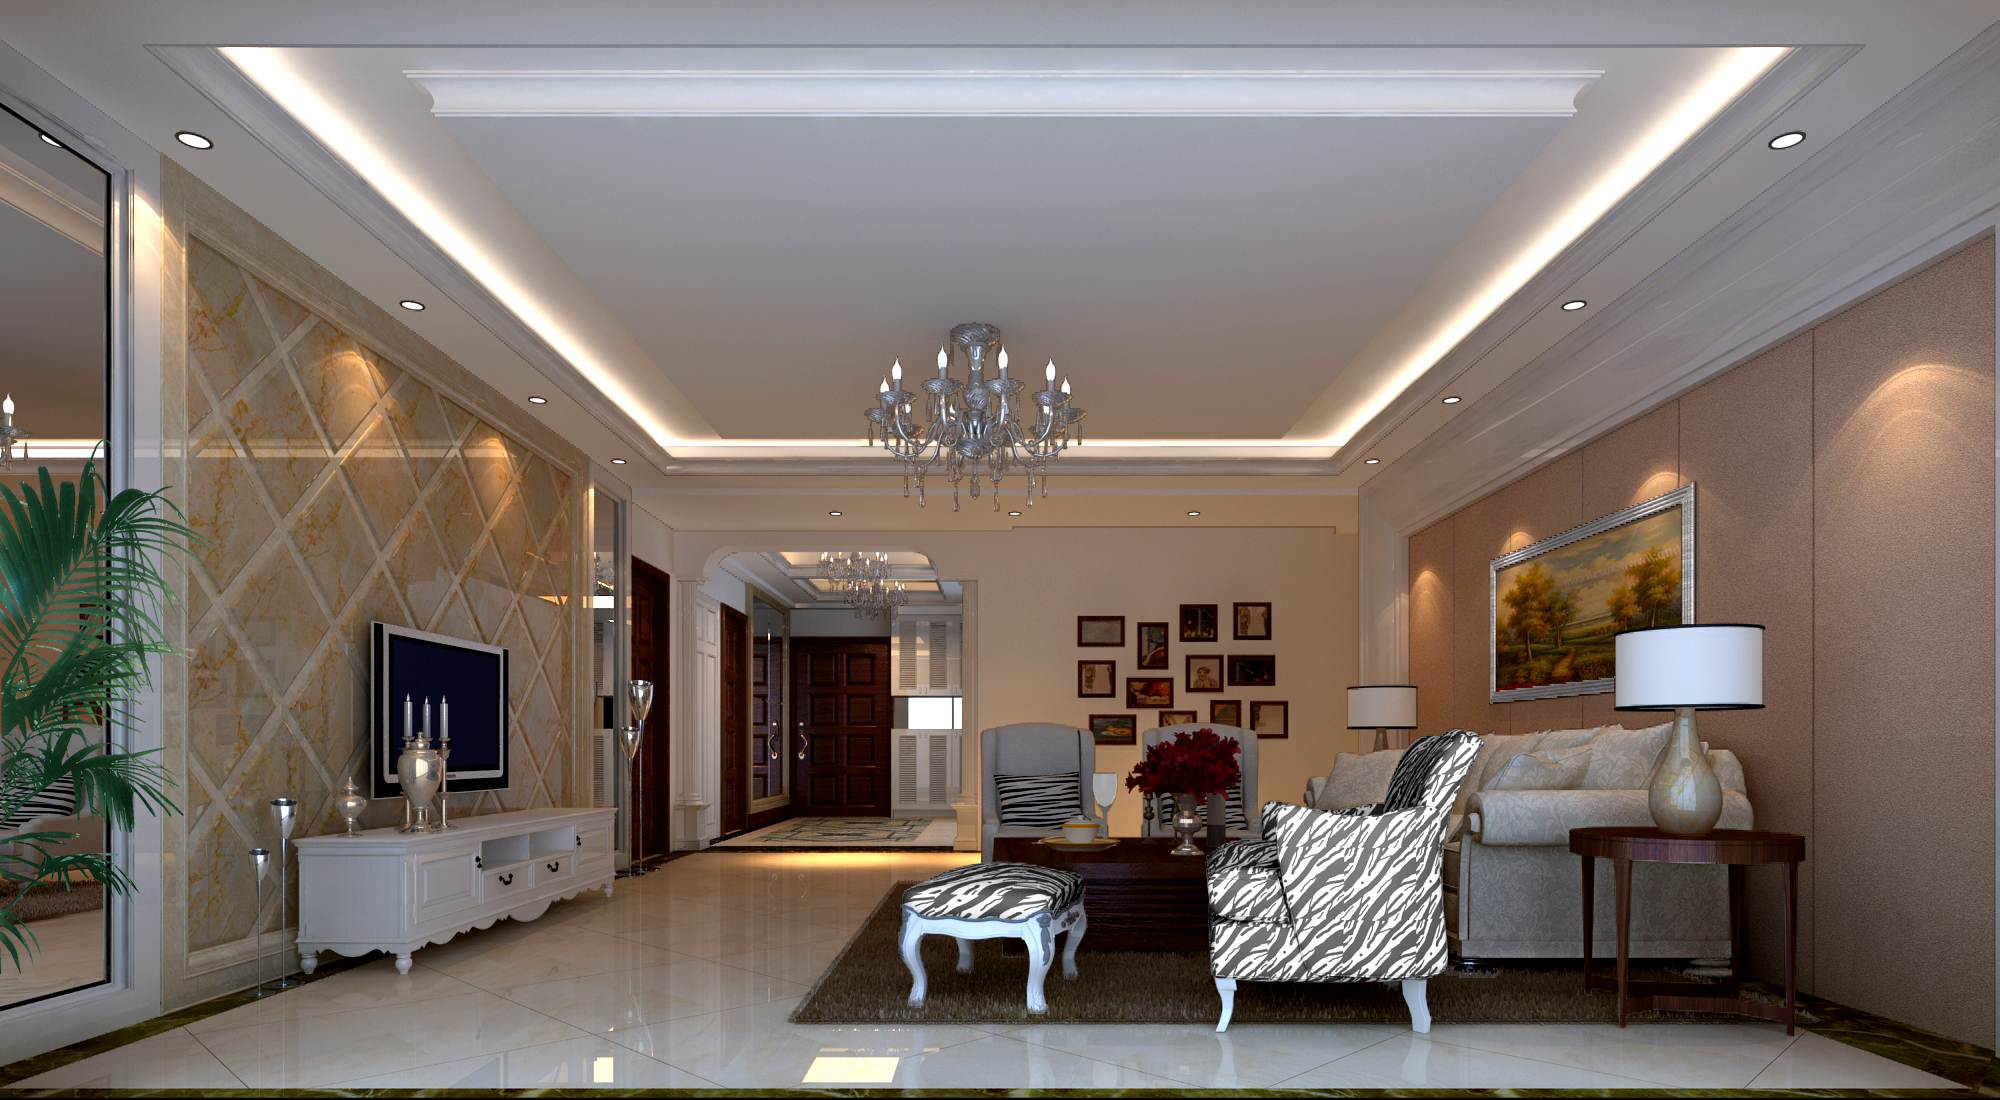 简约 欧式 混搭 白领 80后 客厅图片来自长沙金煌装饰在丽景香山简欧式时尚家居的分享